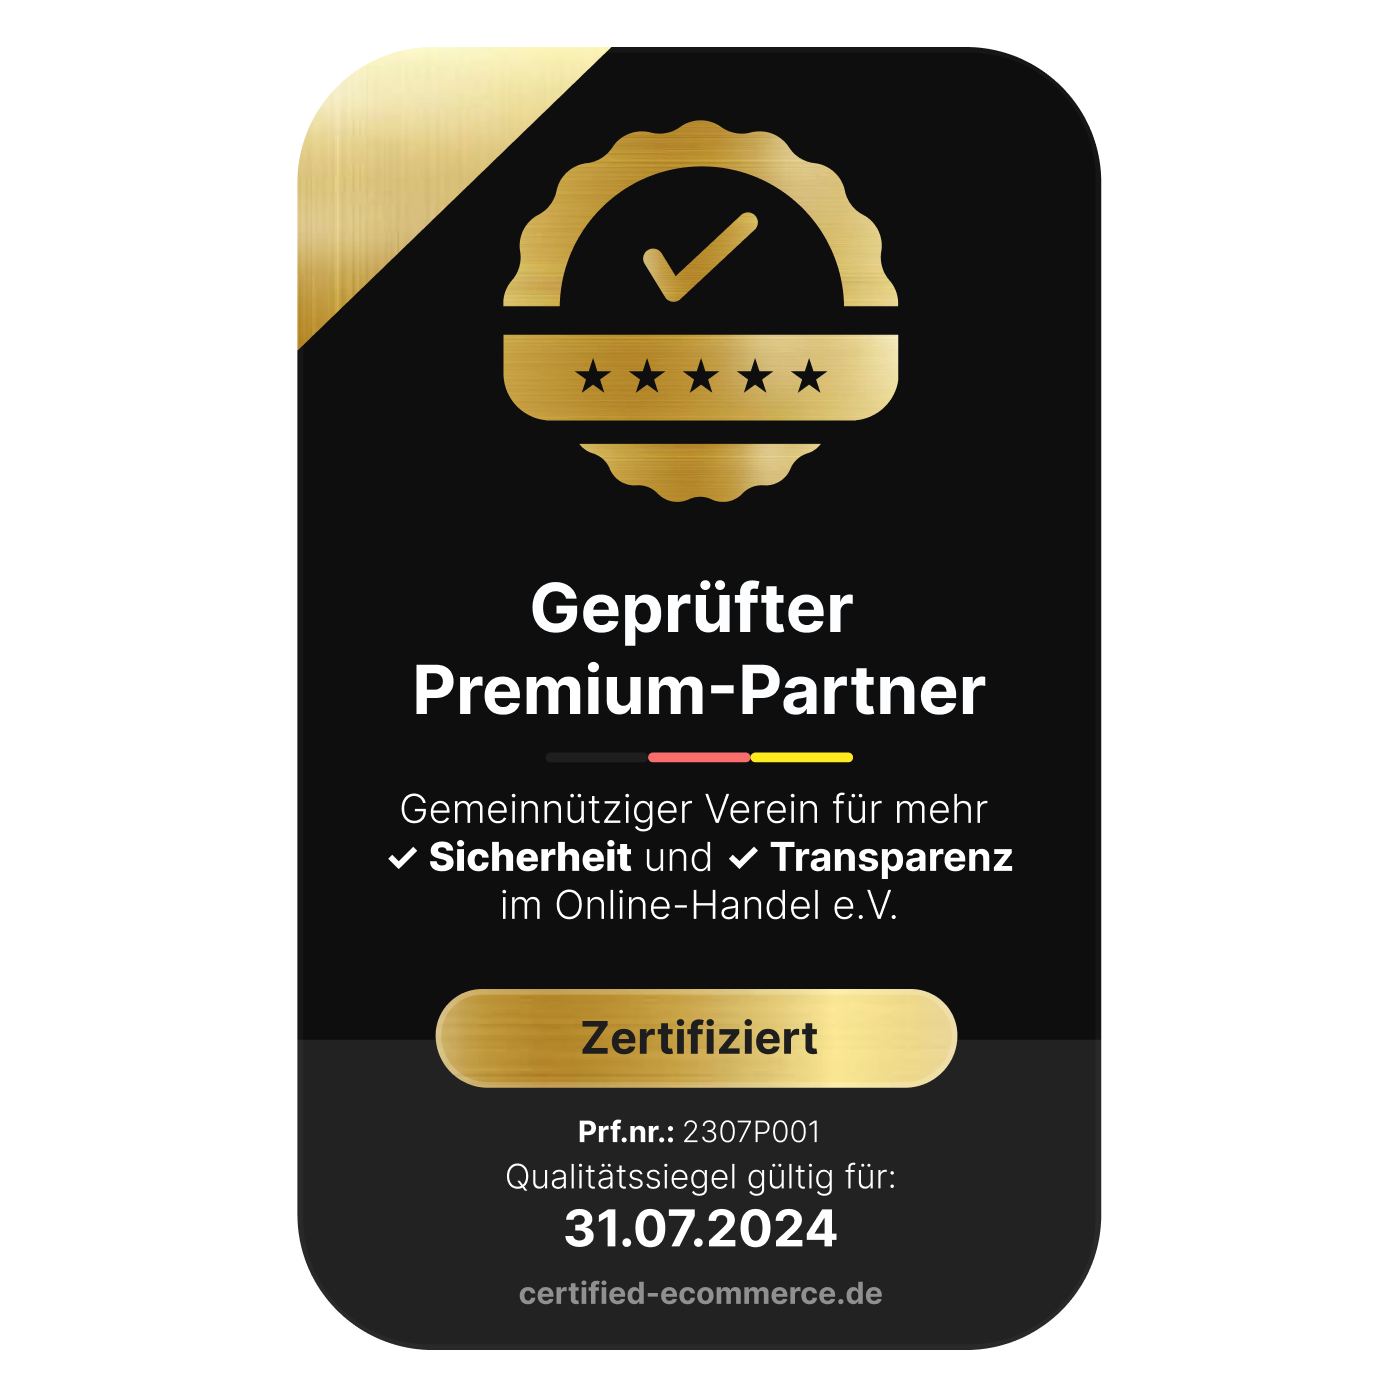 Ein gold-schwarzes Logo mit der Aufschrift "Geprüfter Premium Partner".